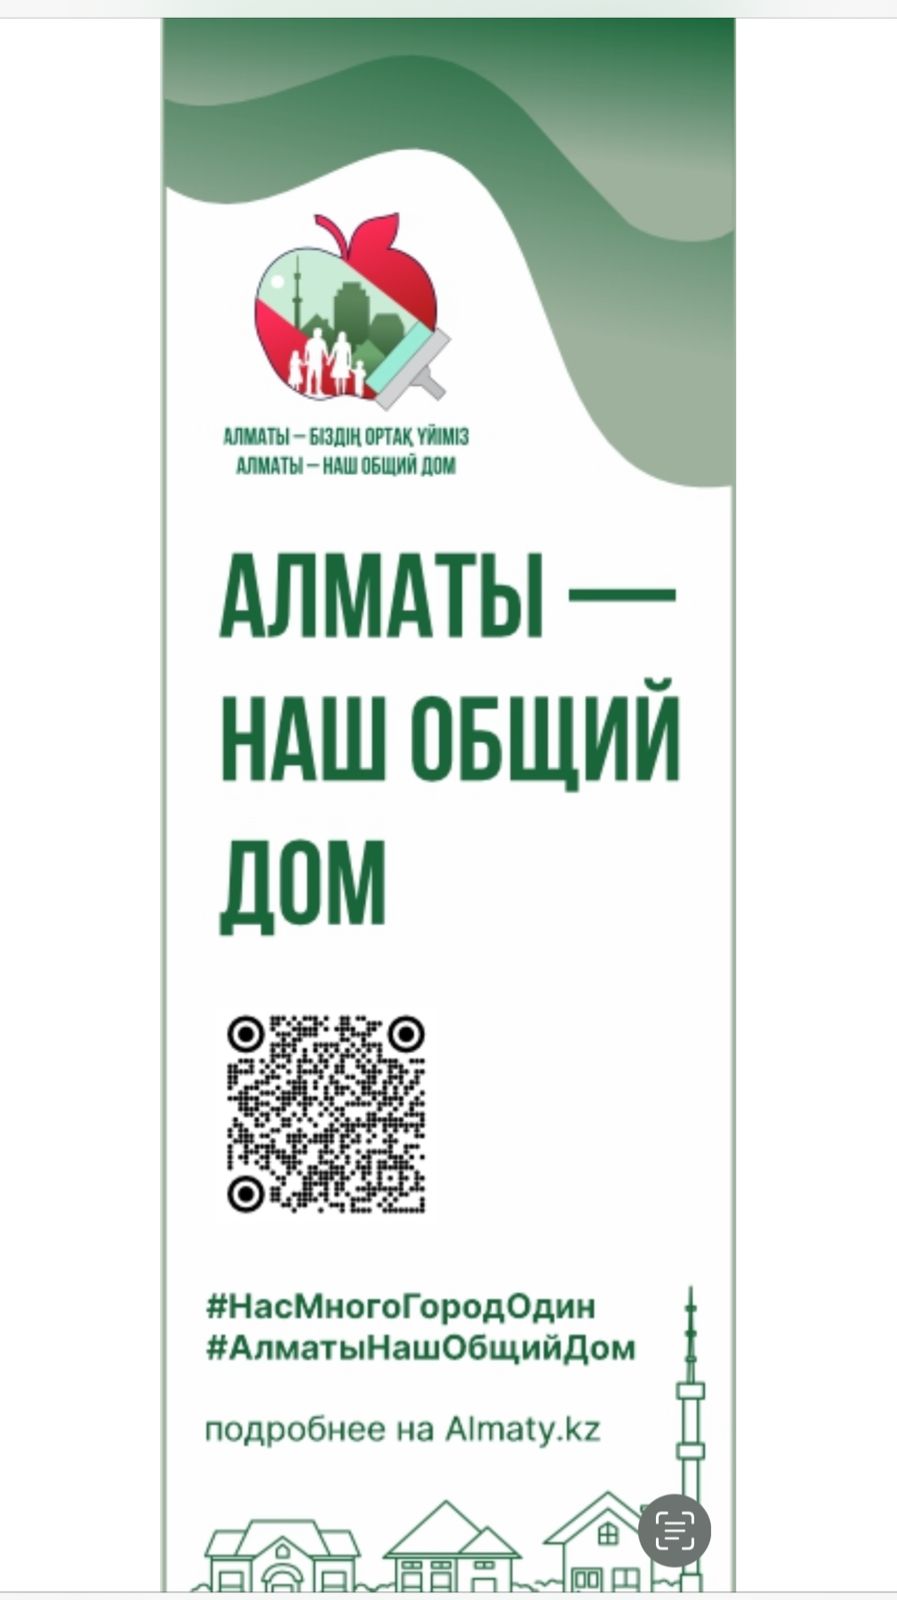 "Алматы-наш общий дом" С 8 апреля по 8 мая во всех районах города будут проведены мероприятия по уборке мусора,очистке объектов городской инфраструктуры,массовой посадке деревьев.